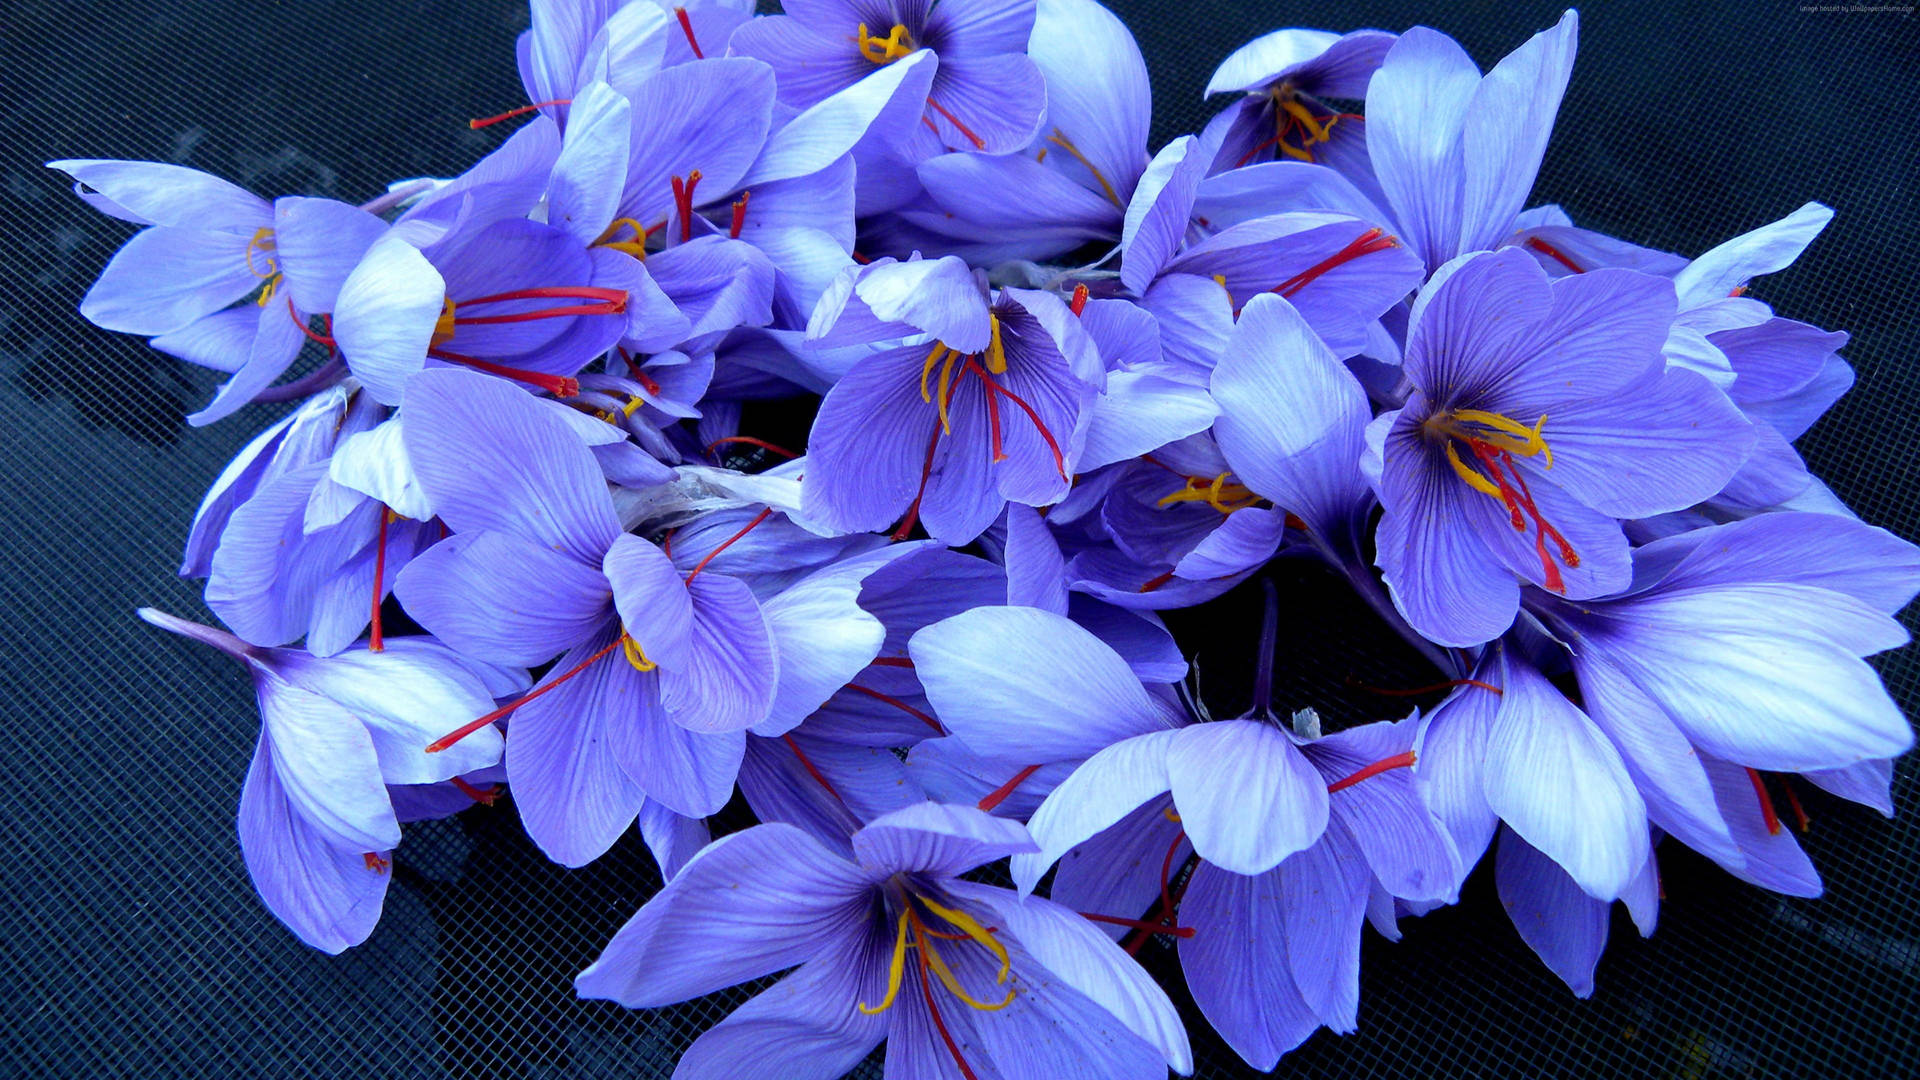 Blue Saffron Crocus Flowers Picture